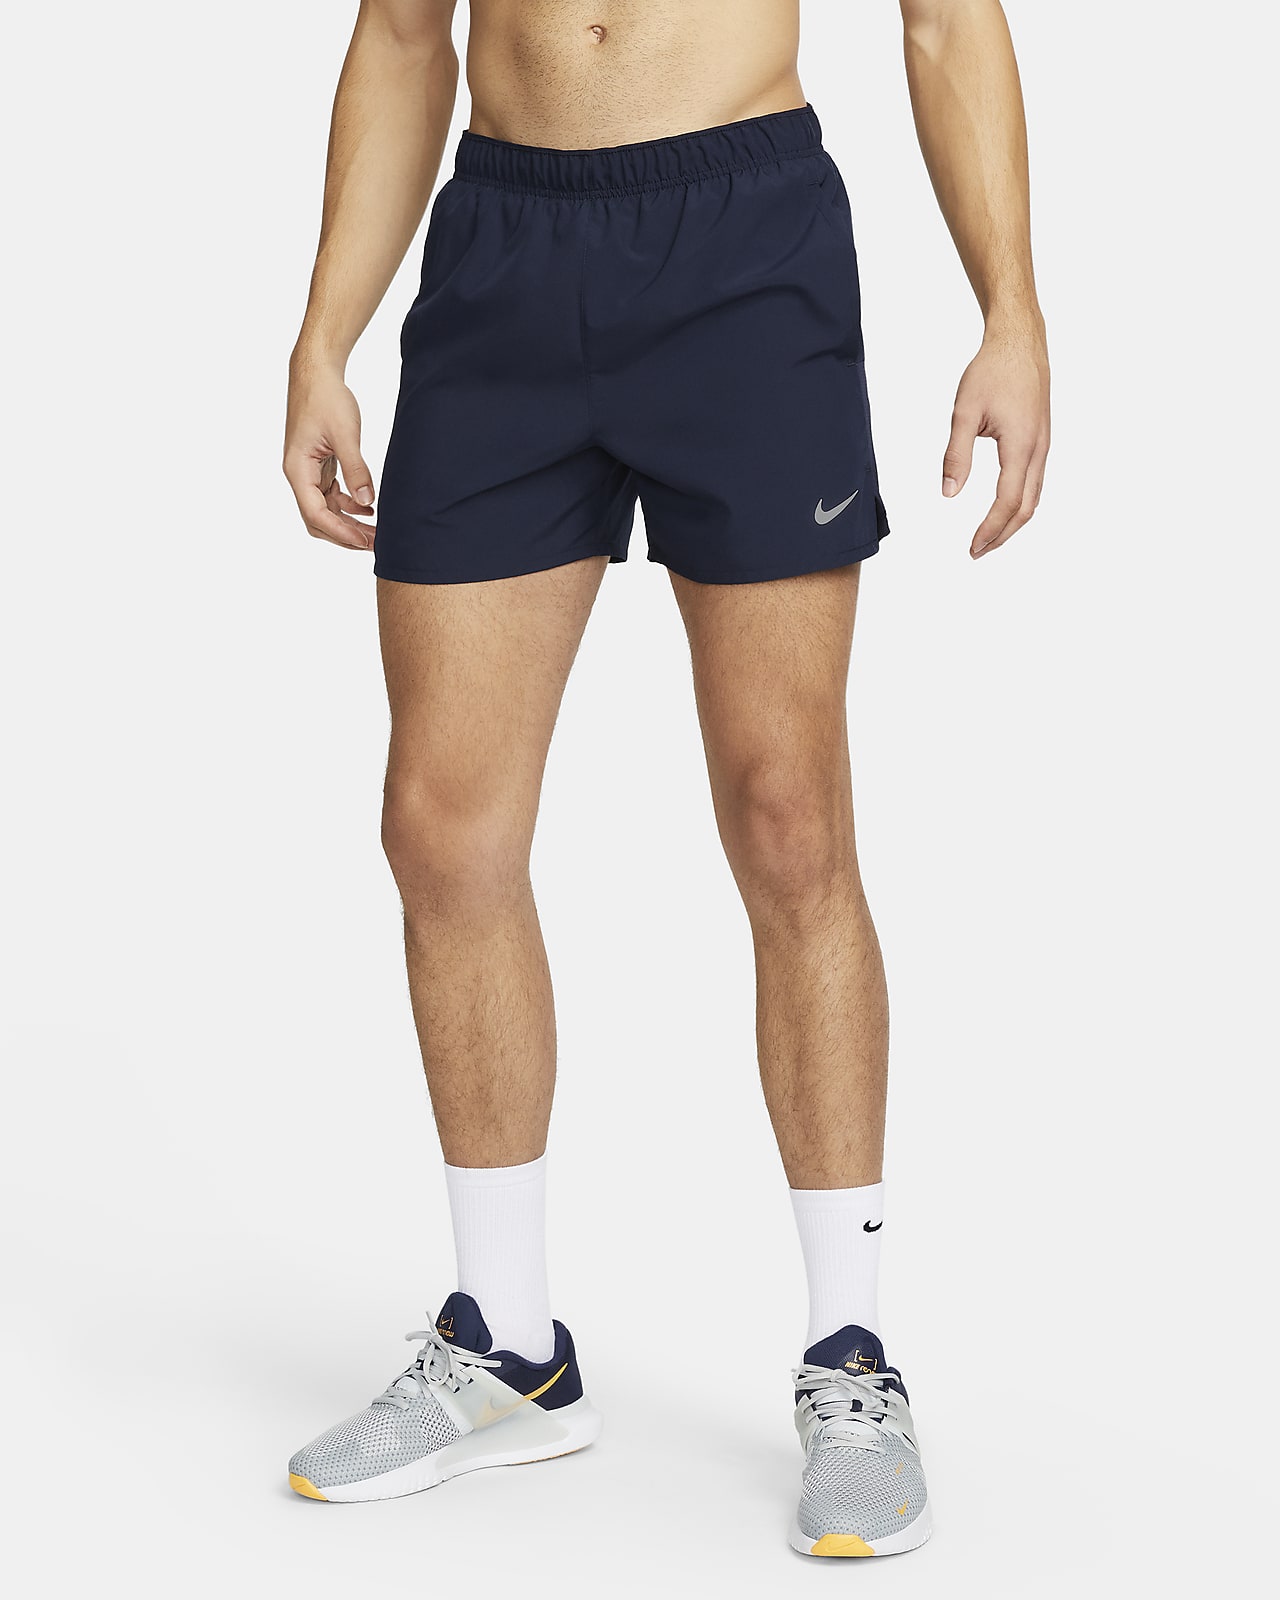 Calções de running forrados com slips de 13 cm Dri-FIT Nike Challenger para homem